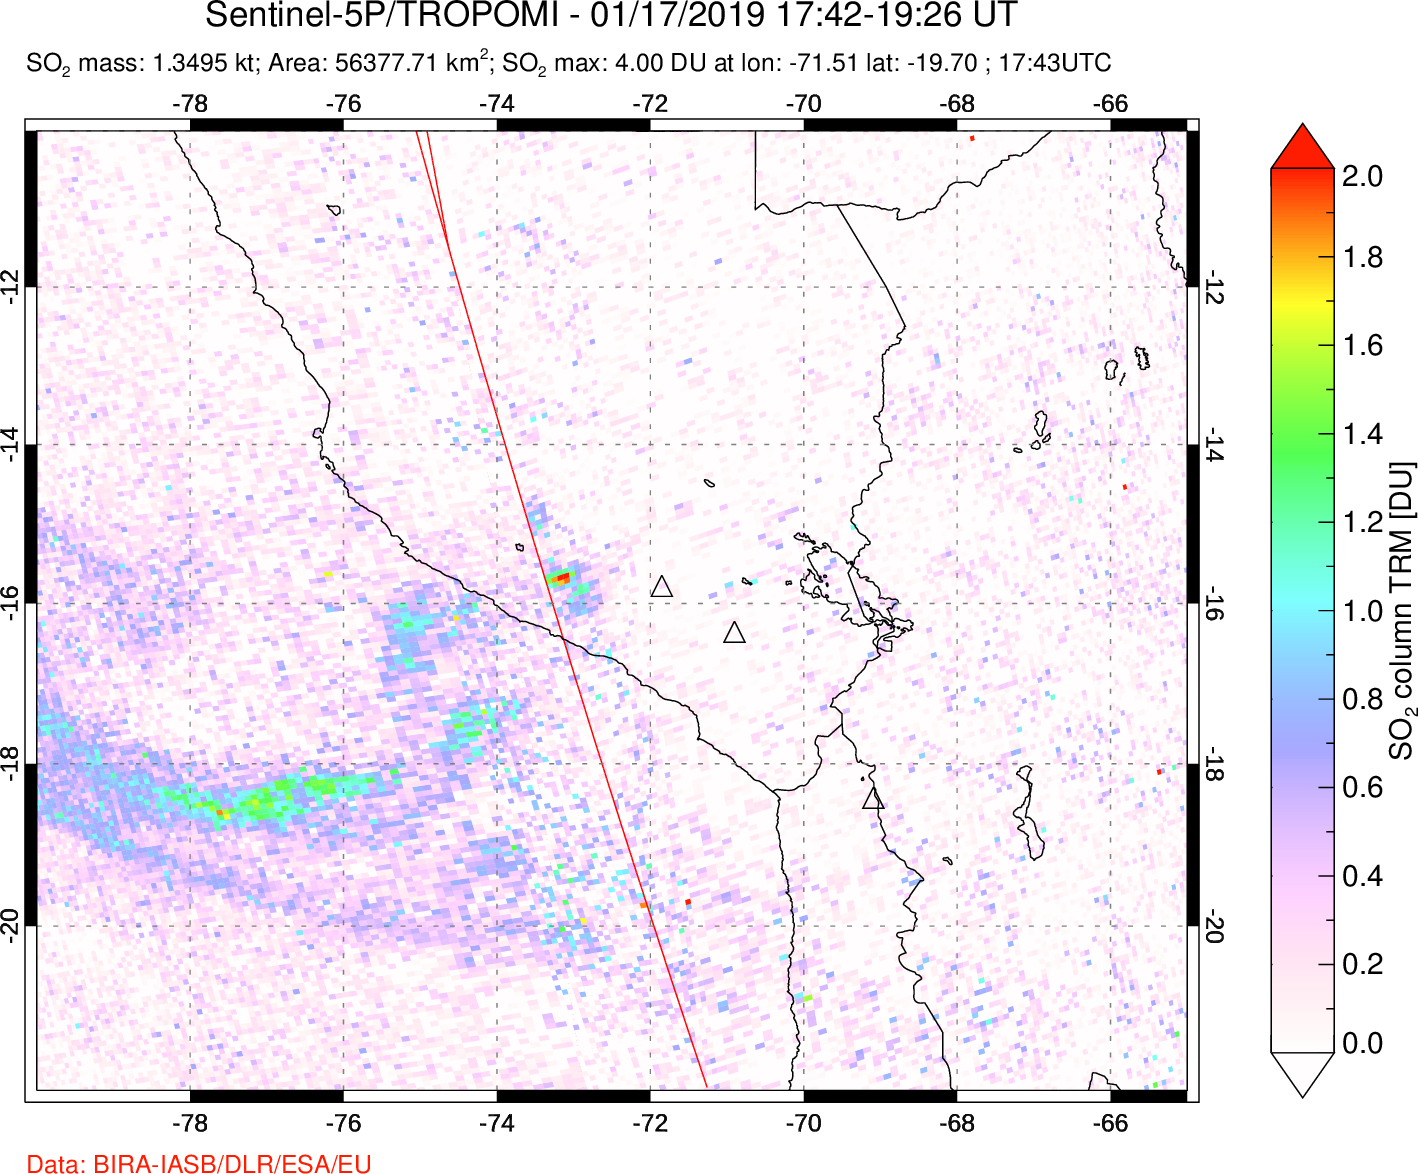 A sulfur dioxide image over Peru on Jan 17, 2019.